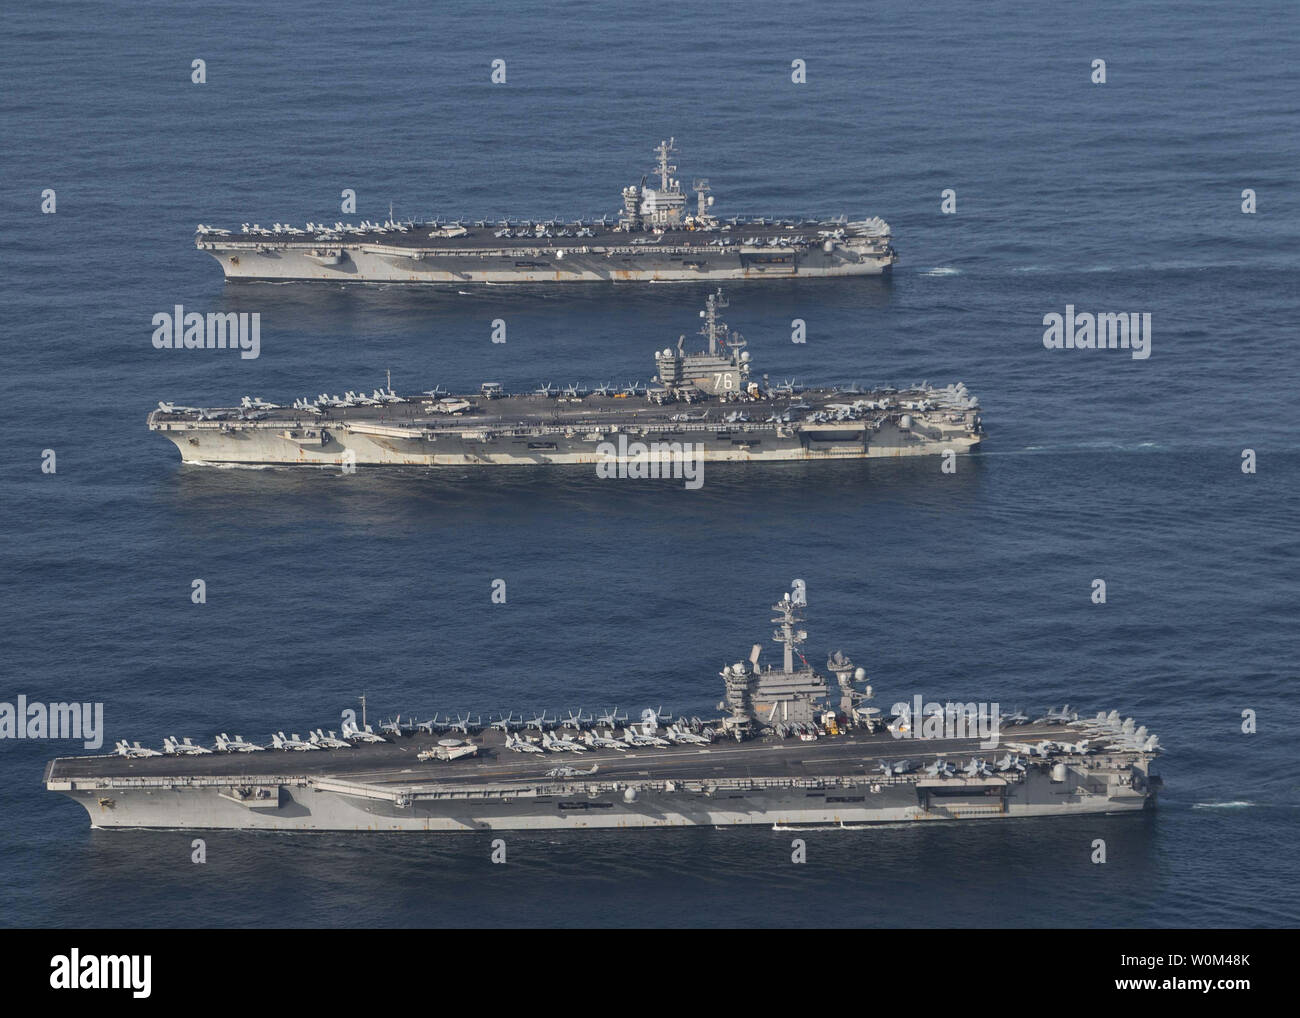 El portaaviones USS Ronald Reagan (CVN 76), USS Theodore Roosevelt (CVN 71) y el USS Nimitz (CVN 68) y sus grupos de huelga están en curso, la realización de las operaciones, en aguas internacionales, como parte de un tres-carrier Strike Force ejercicio el 12 de noviembre de 2017. La marina estadounidense ha patrullado las Indo-Asia Pacífico rutinariamente durante más de 70 años de promoción de la seguridad regional, la estabilidad y la prosperidad. Foto por el Teniente James Griffin/U.S. Navy/UPI Foto de stock